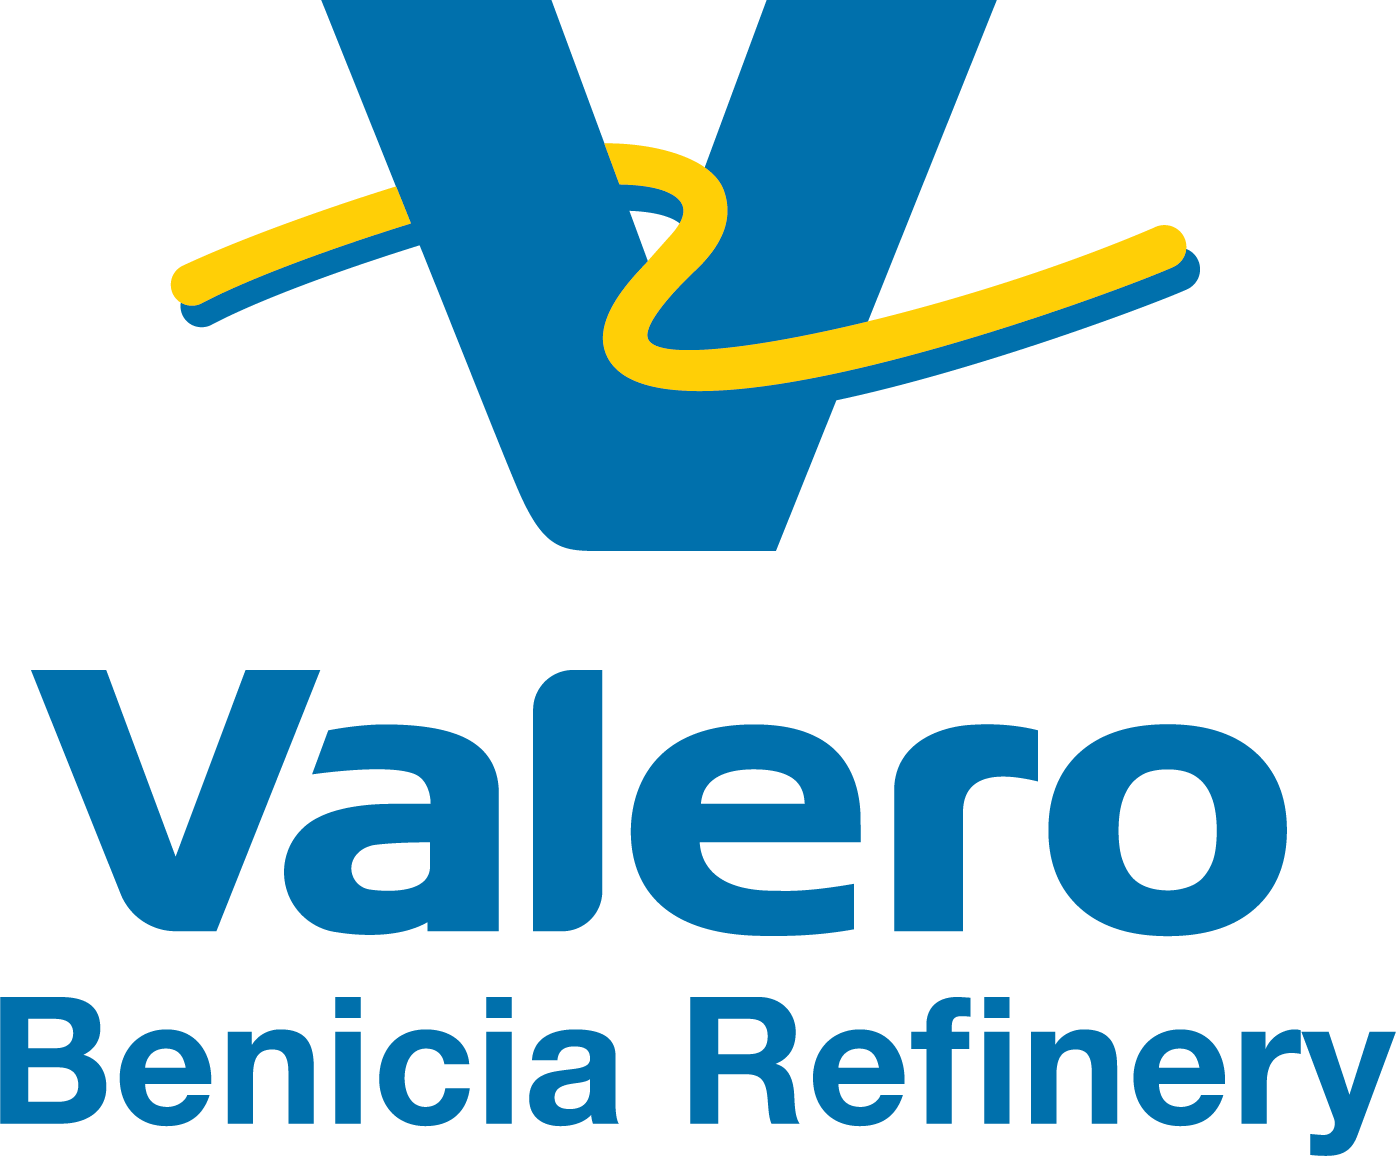 Valero Benicia Refinery Crab Feed Sponsor